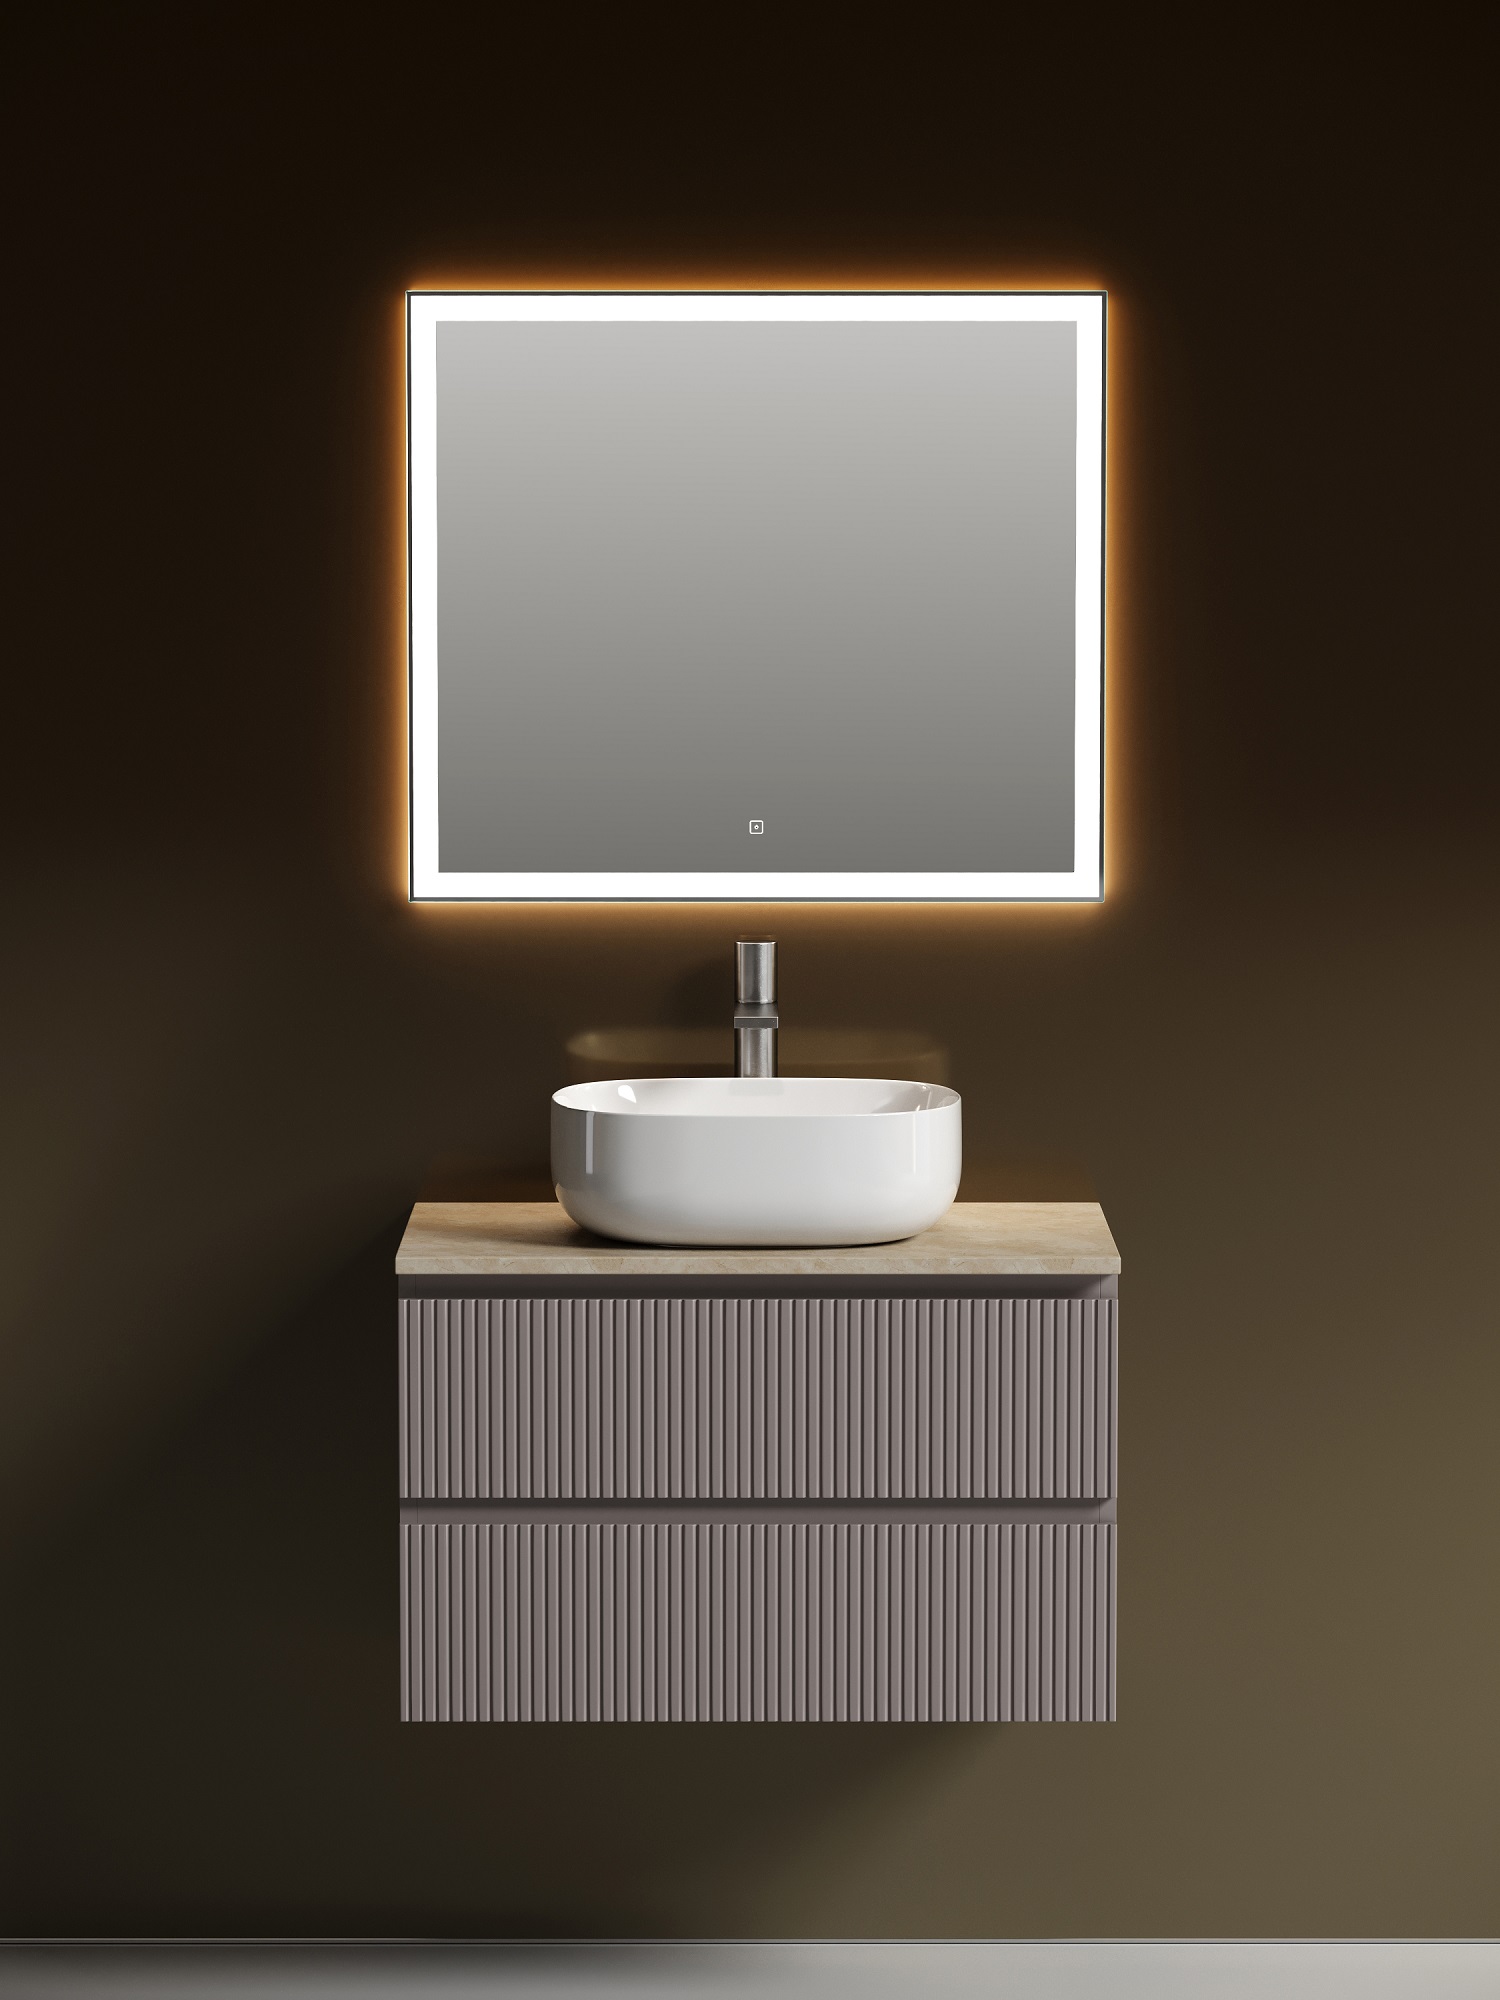 Мебель для ванной Sancos Snob T 80 подвесная, столешница kreman, Doha Soft (с отверстием под смеситель) спальник soft 200 190 25 х 75 см от 5 до 20 °с